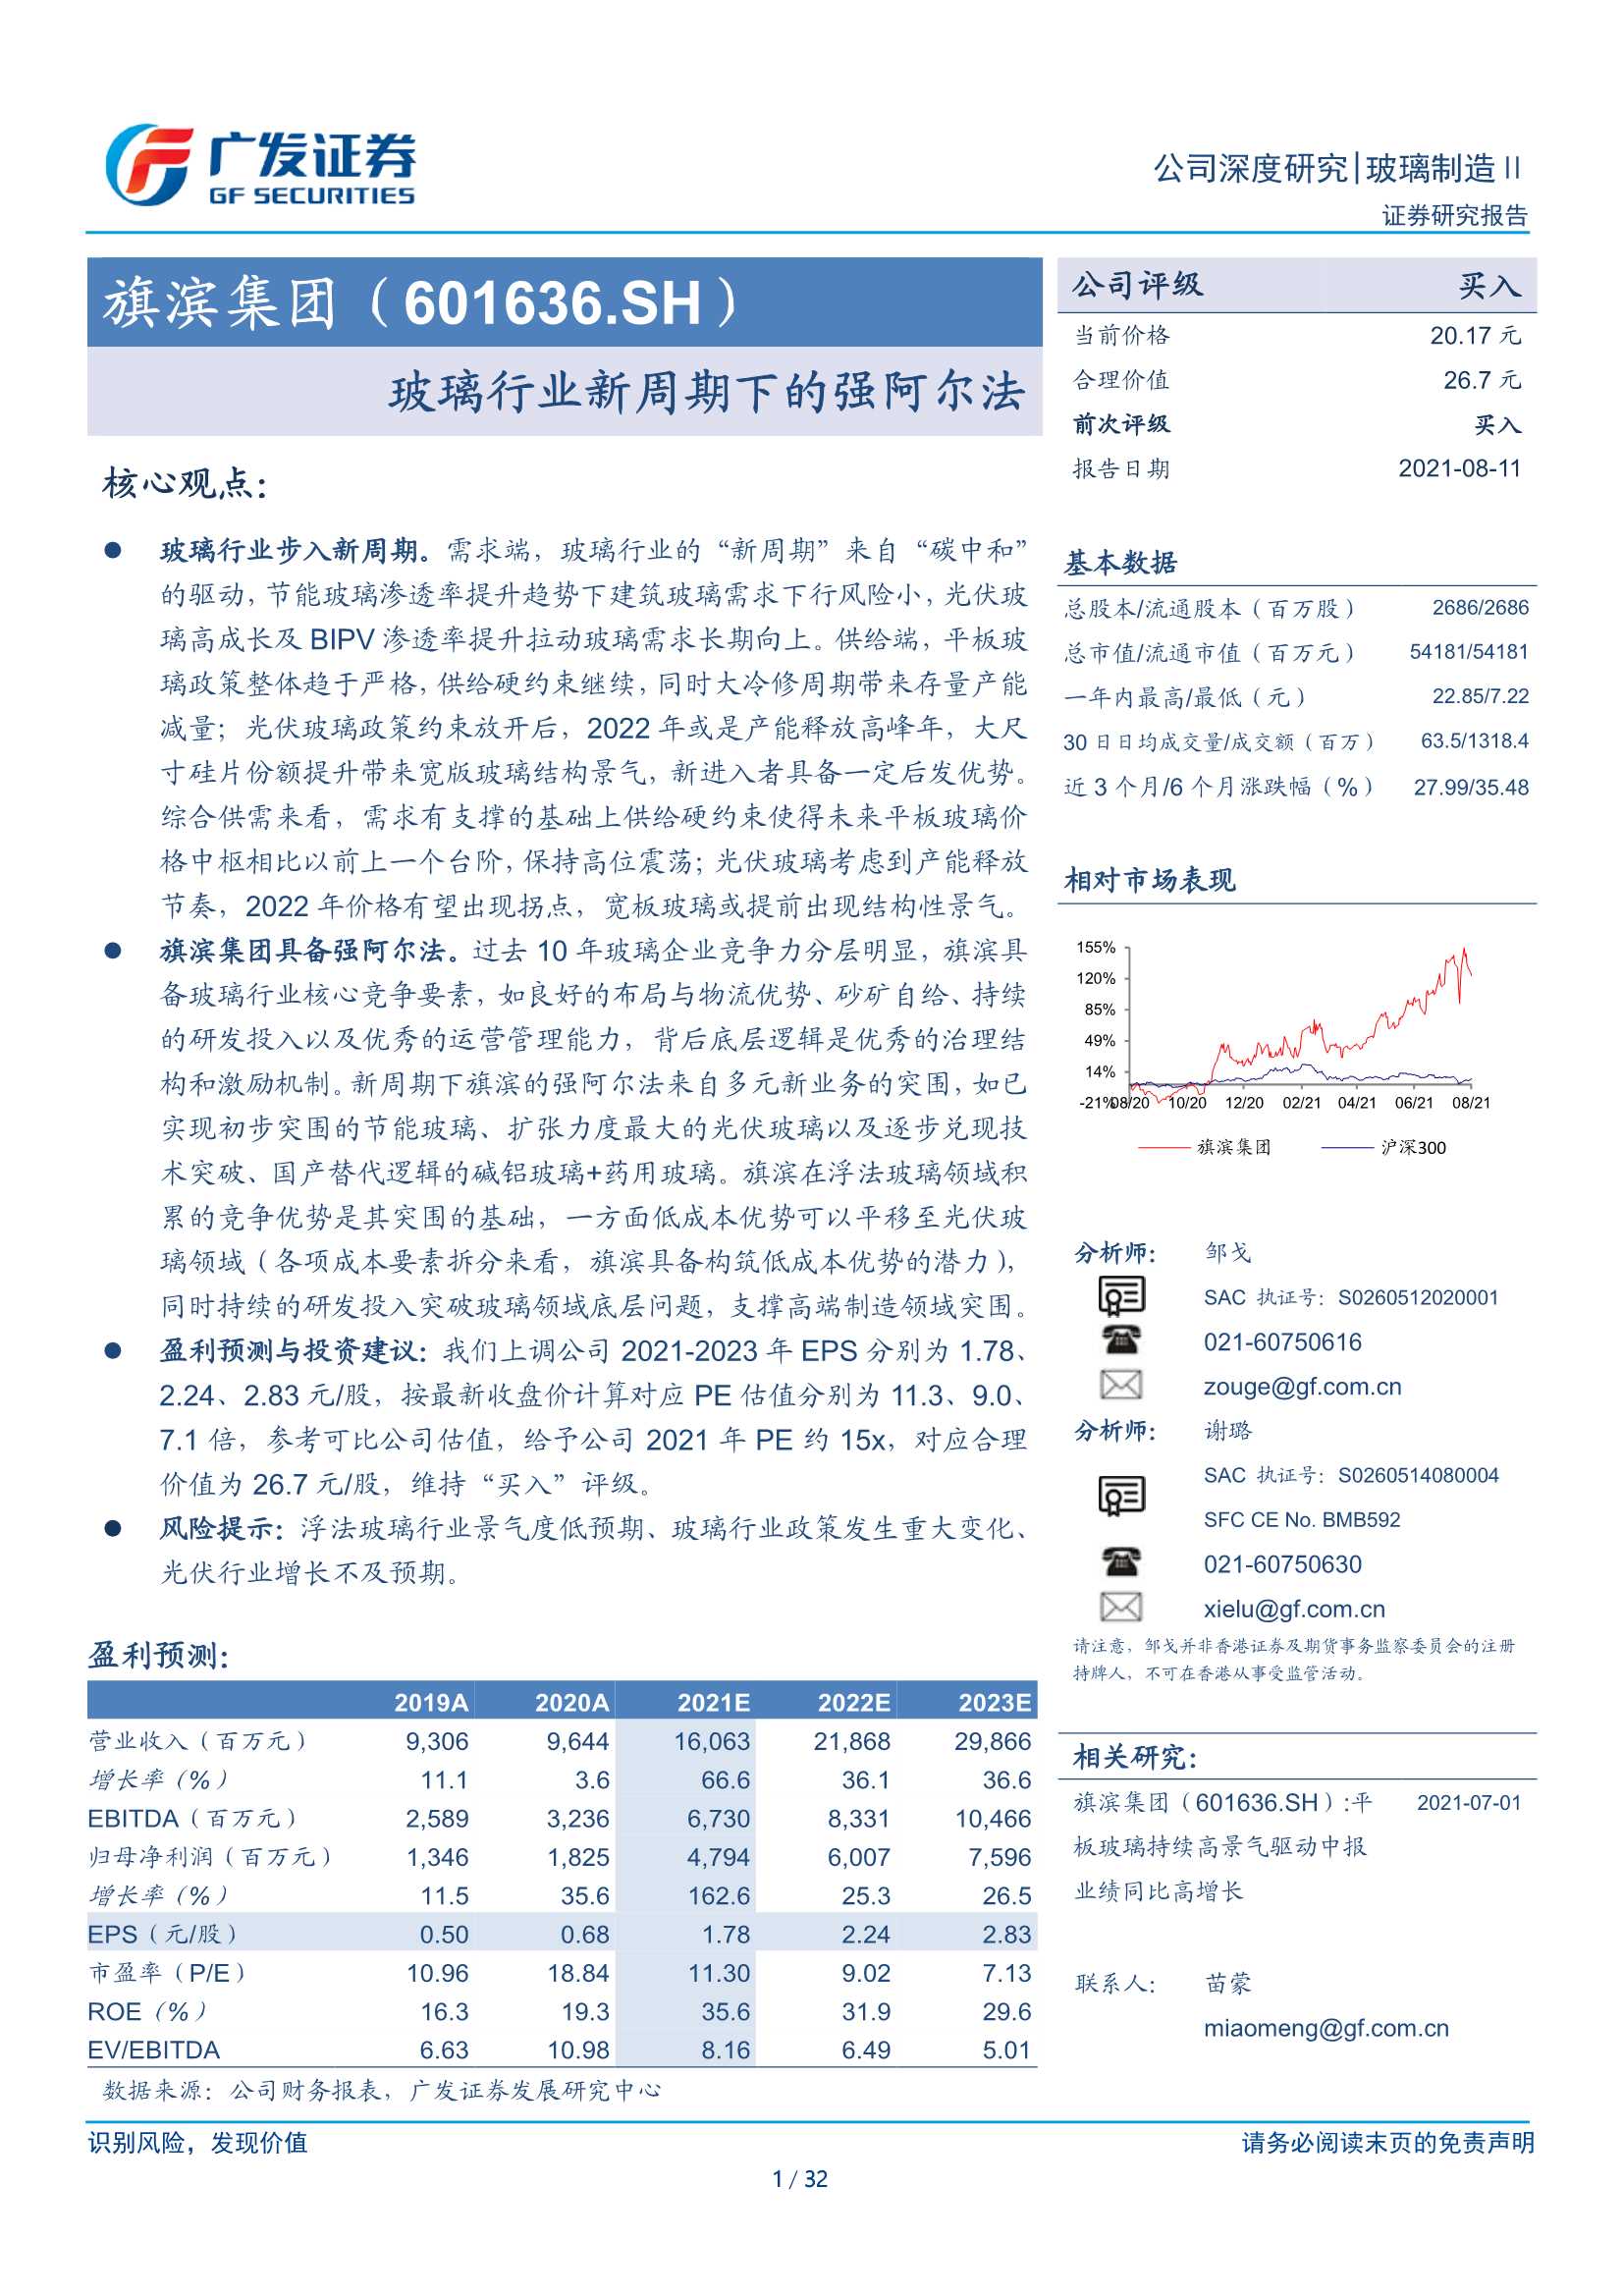 广发证券-旗滨集团-601636-玻璃行业新周期下的强阿尔法-20210811-32页